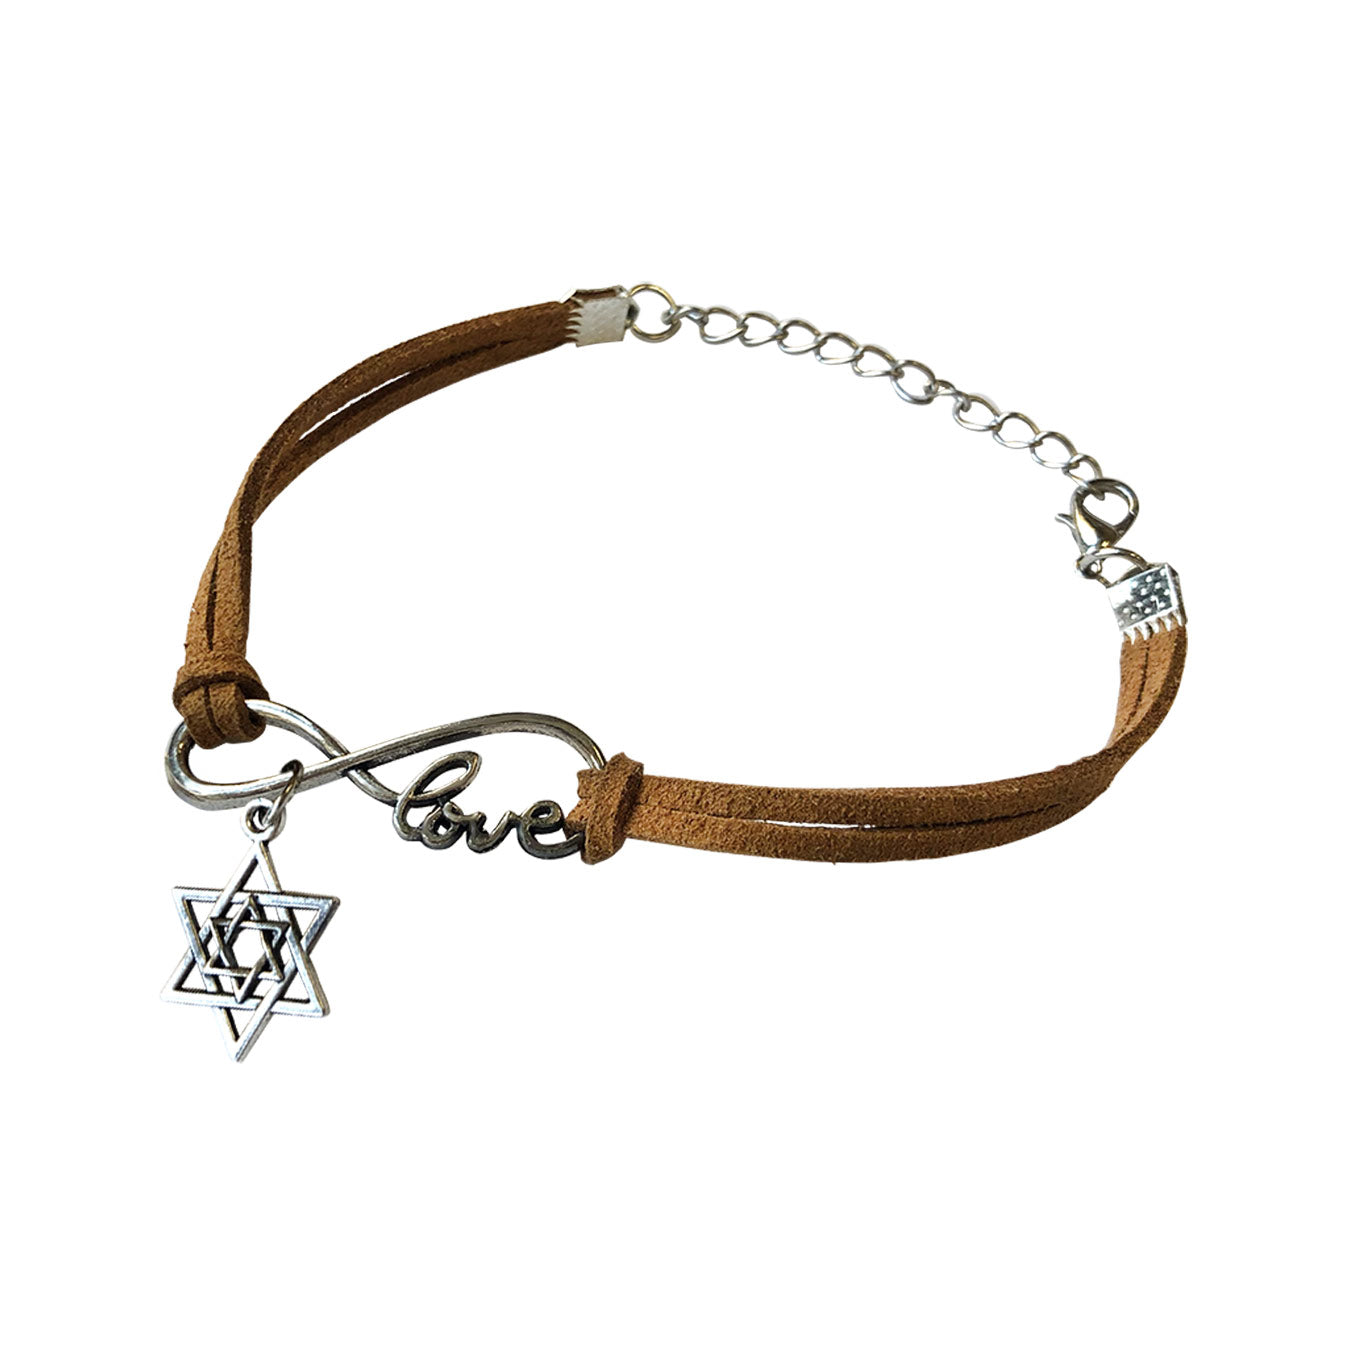 Love Israel for Infinity Bracelet